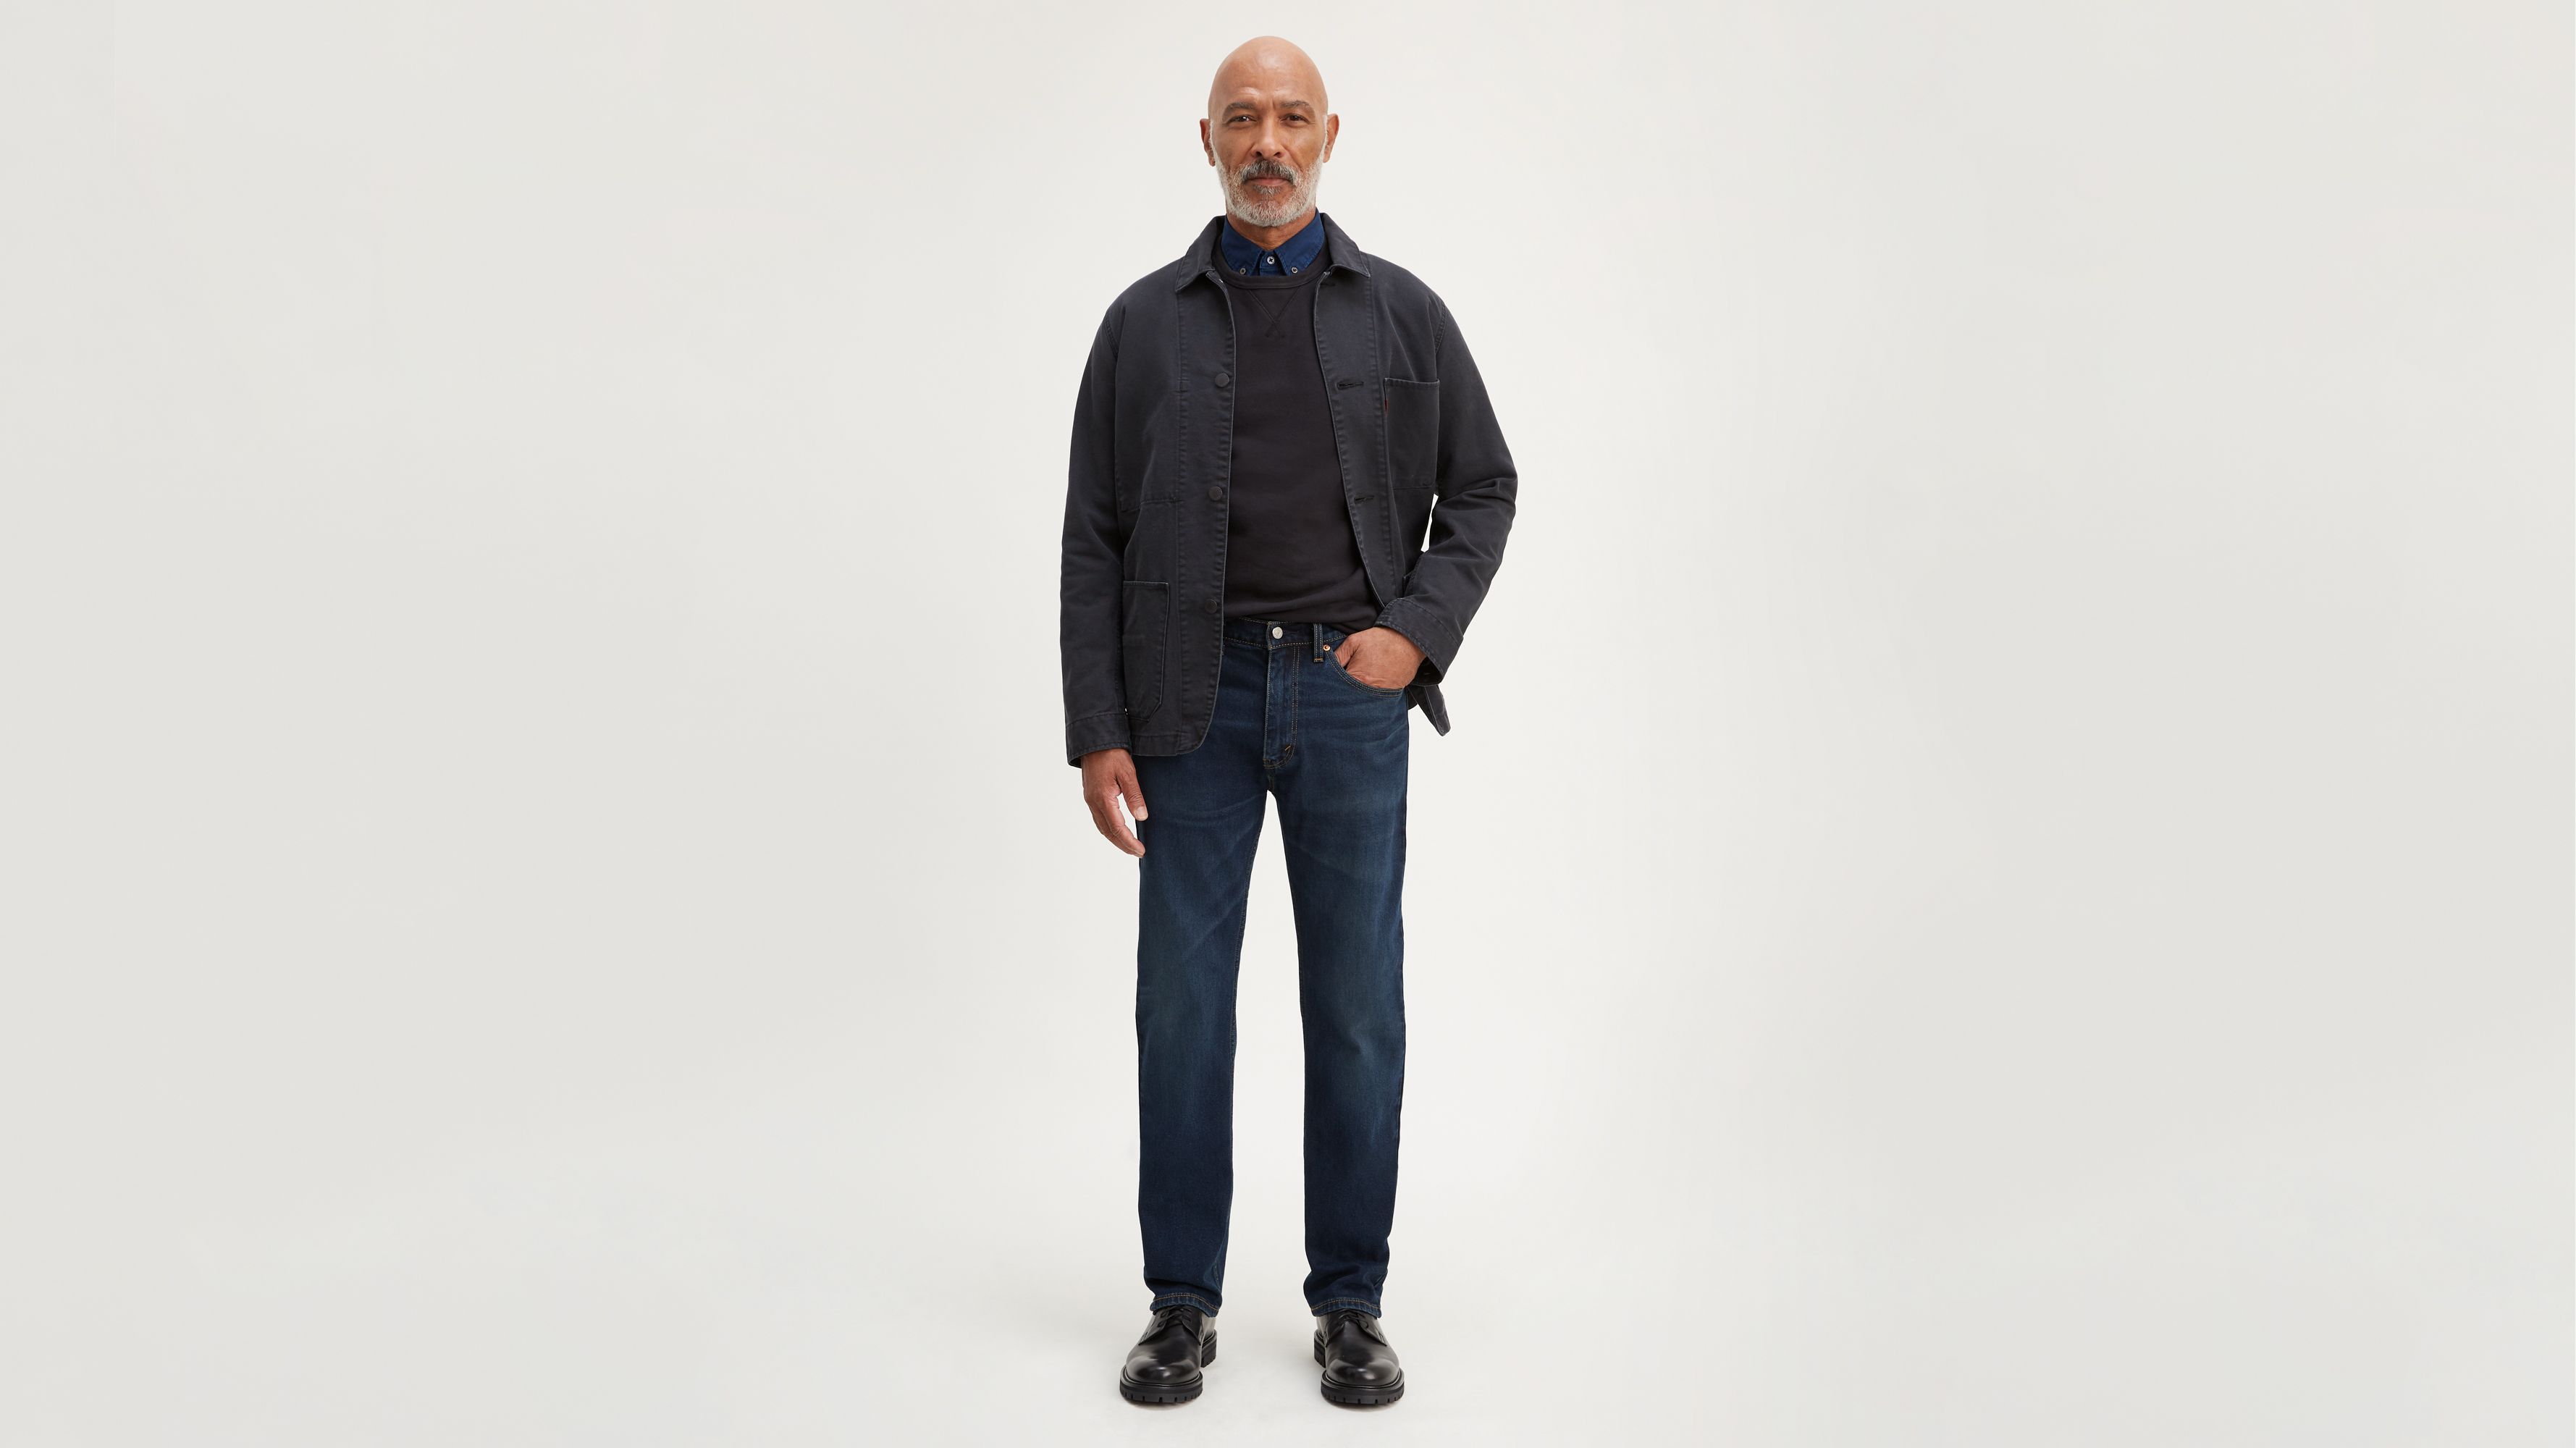 Men's 505™ Stretch Jeans | Levi's® US